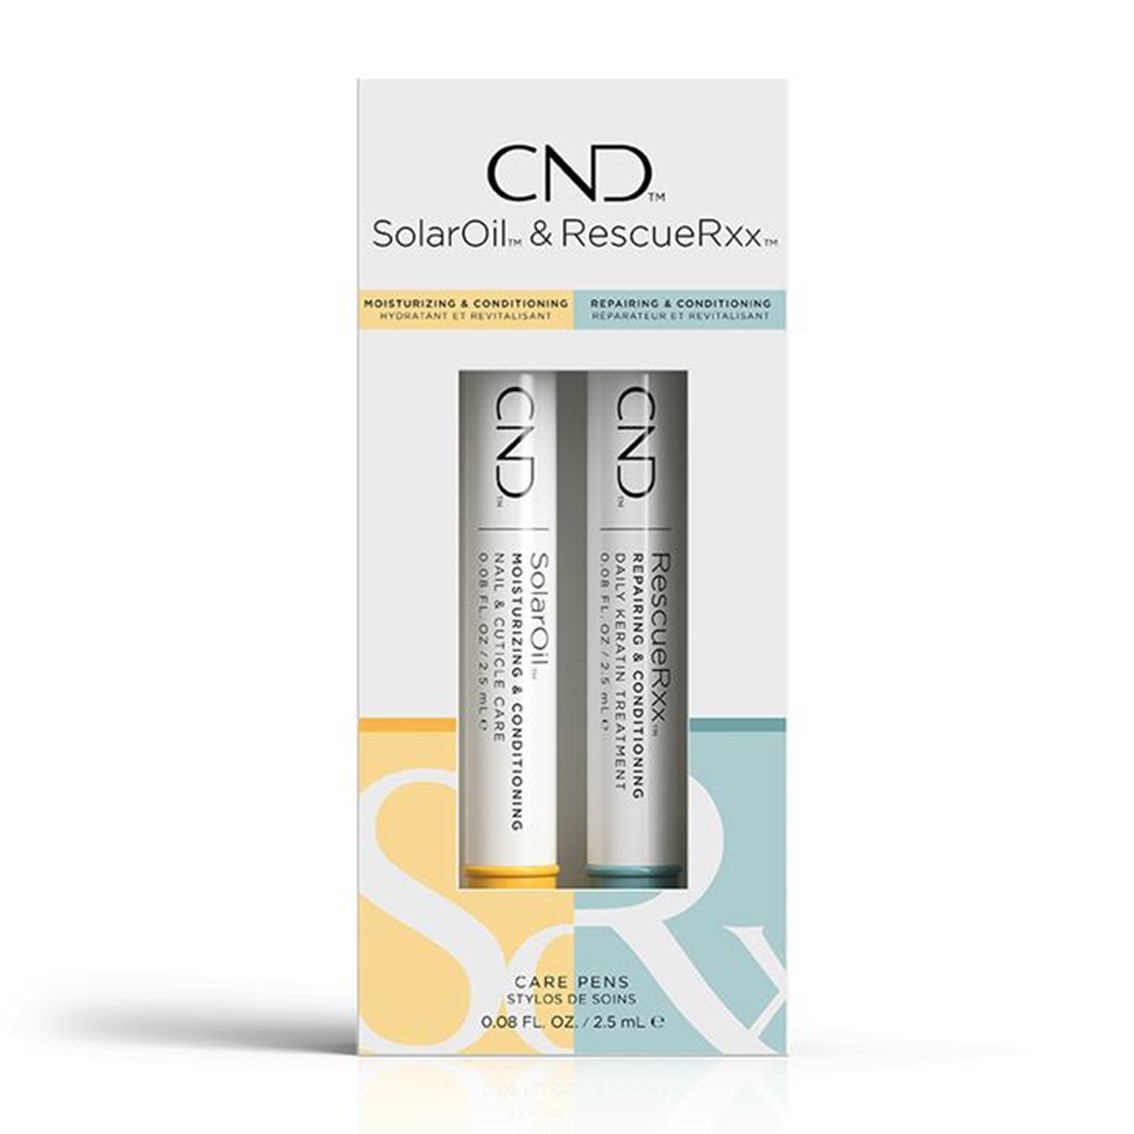 CND™ Care Pen Duo